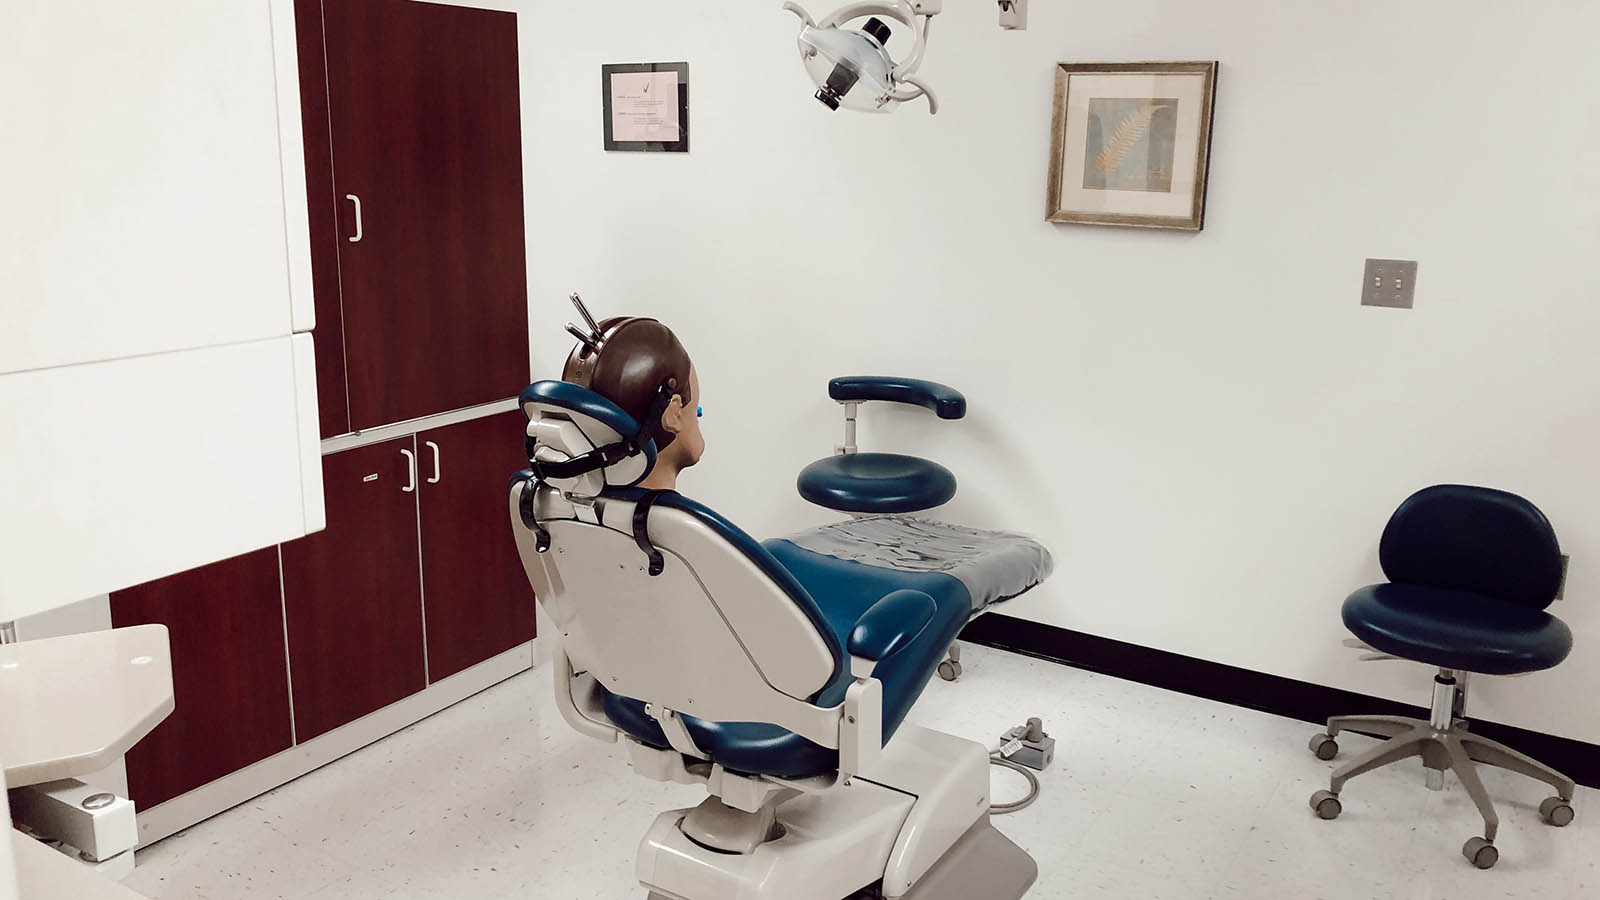 Dentist Chair Simulation